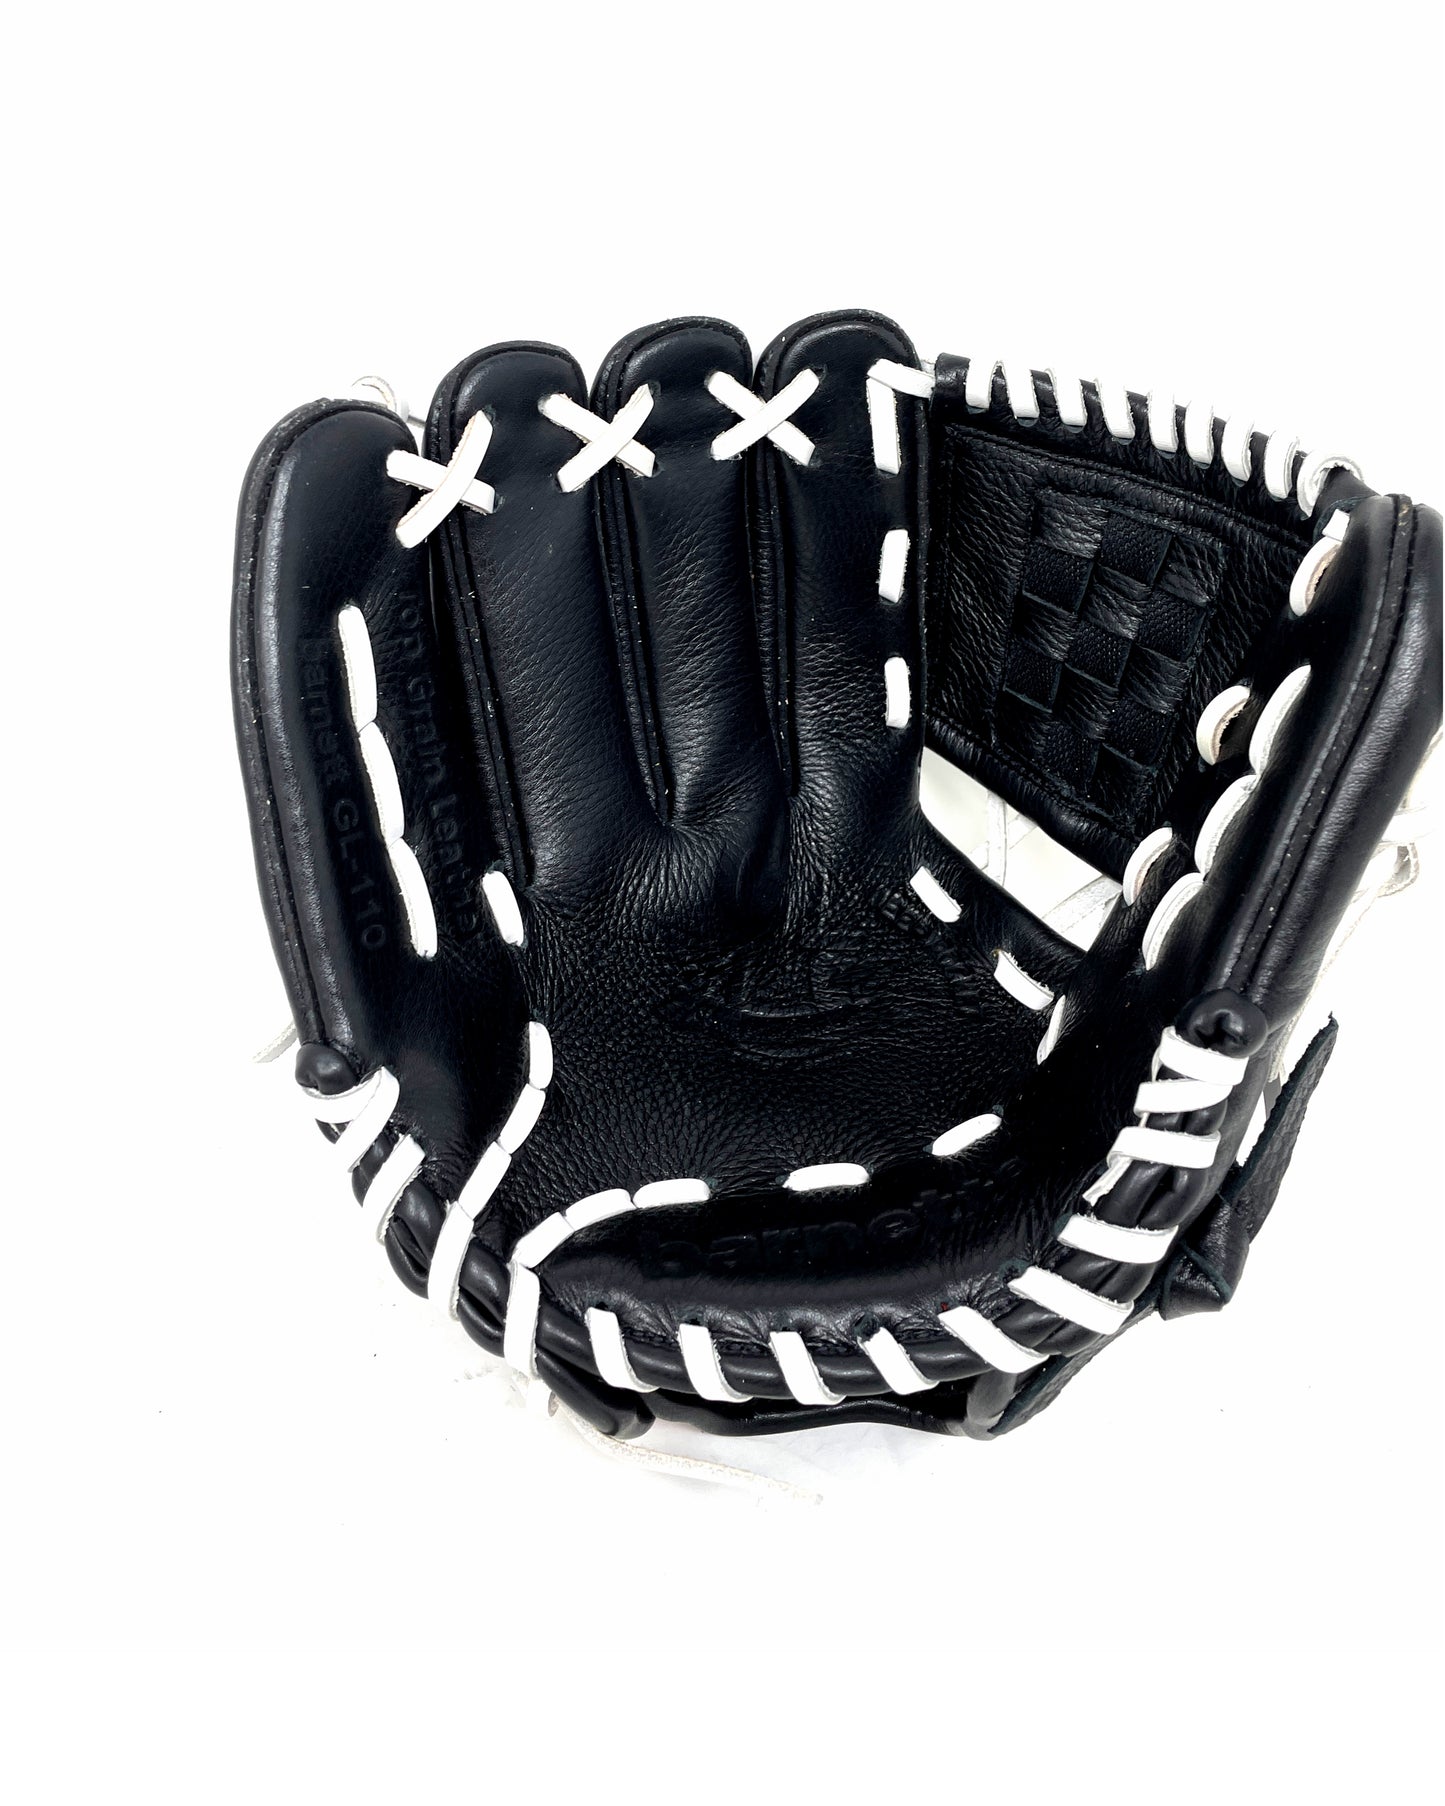 GL-110 gant de baseball en cuir, 11 (pouces), Infield, Noir